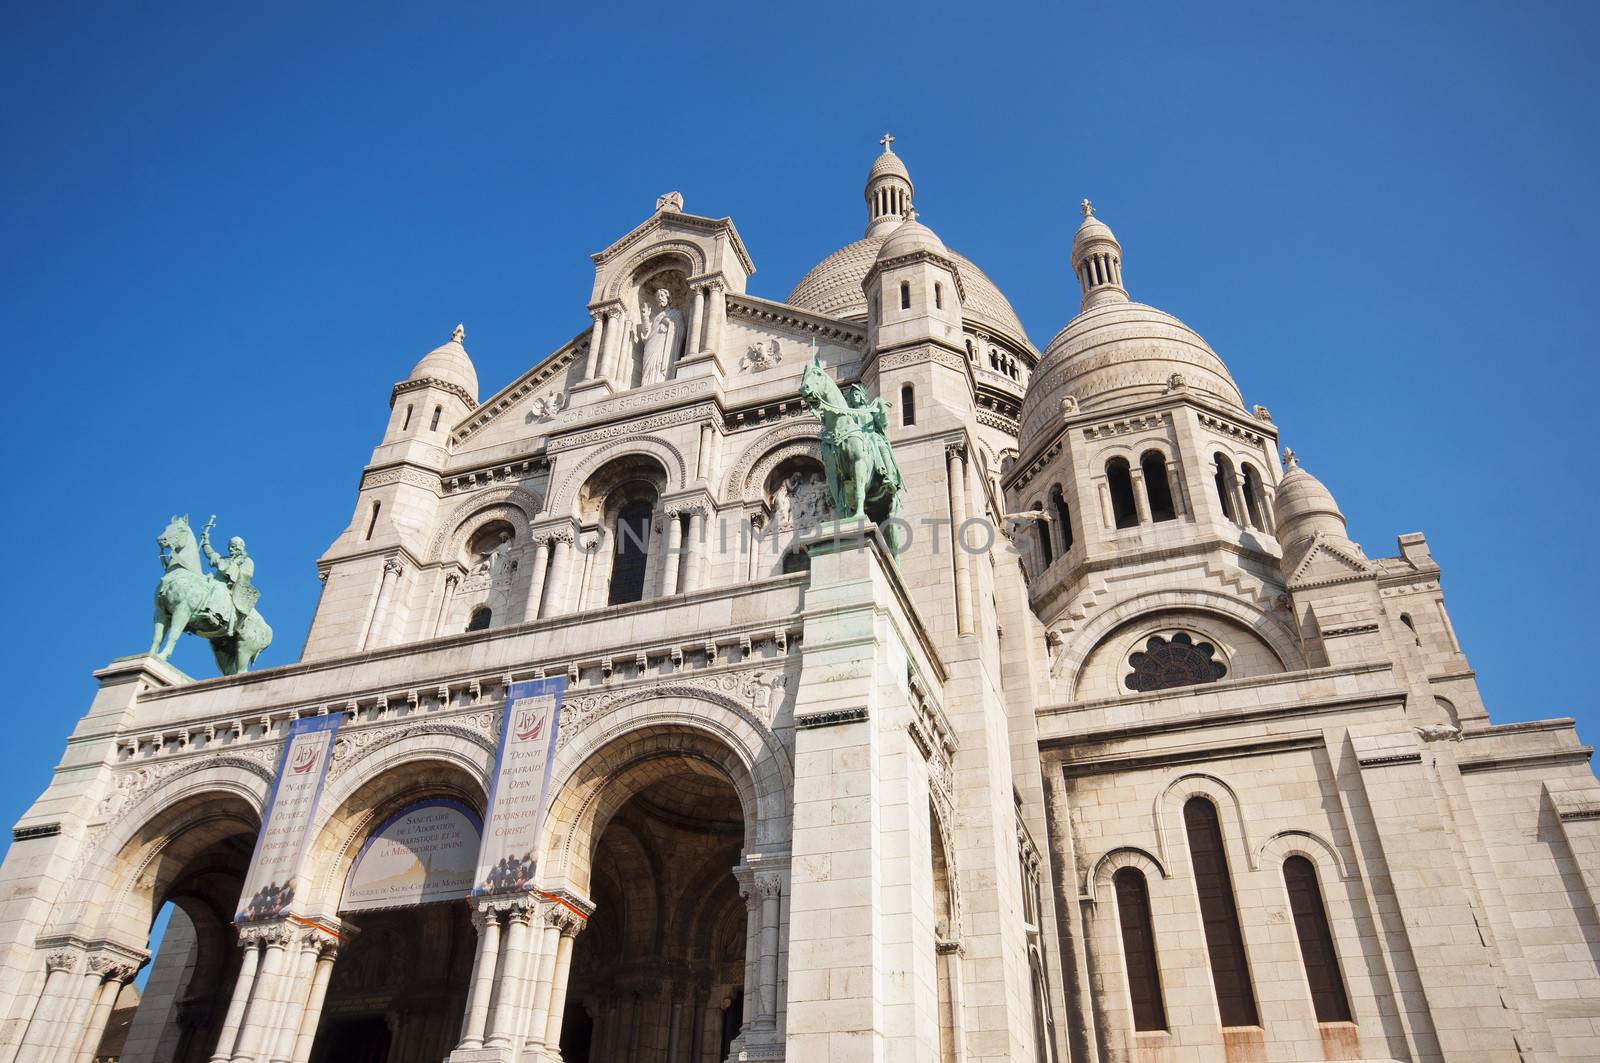 Sacre Coeur in Paris by sognolucido